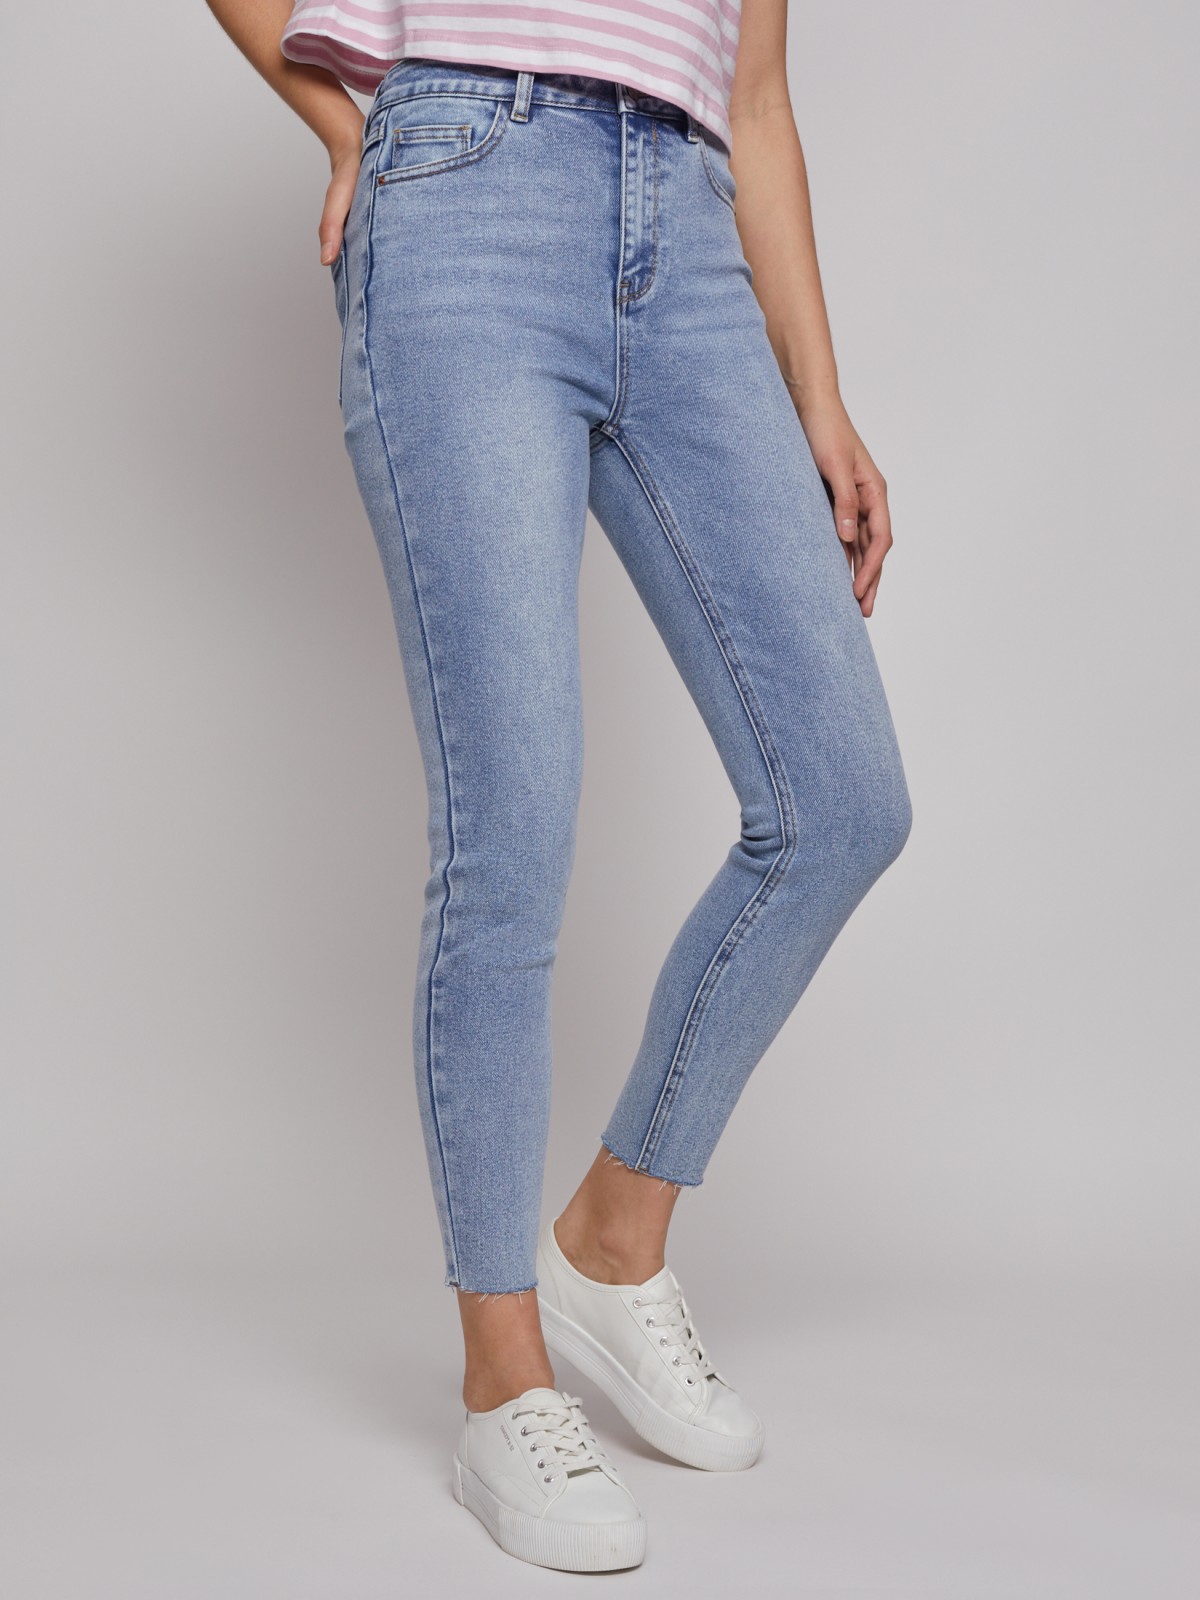 Укороченные джинсы силуэта Skinny